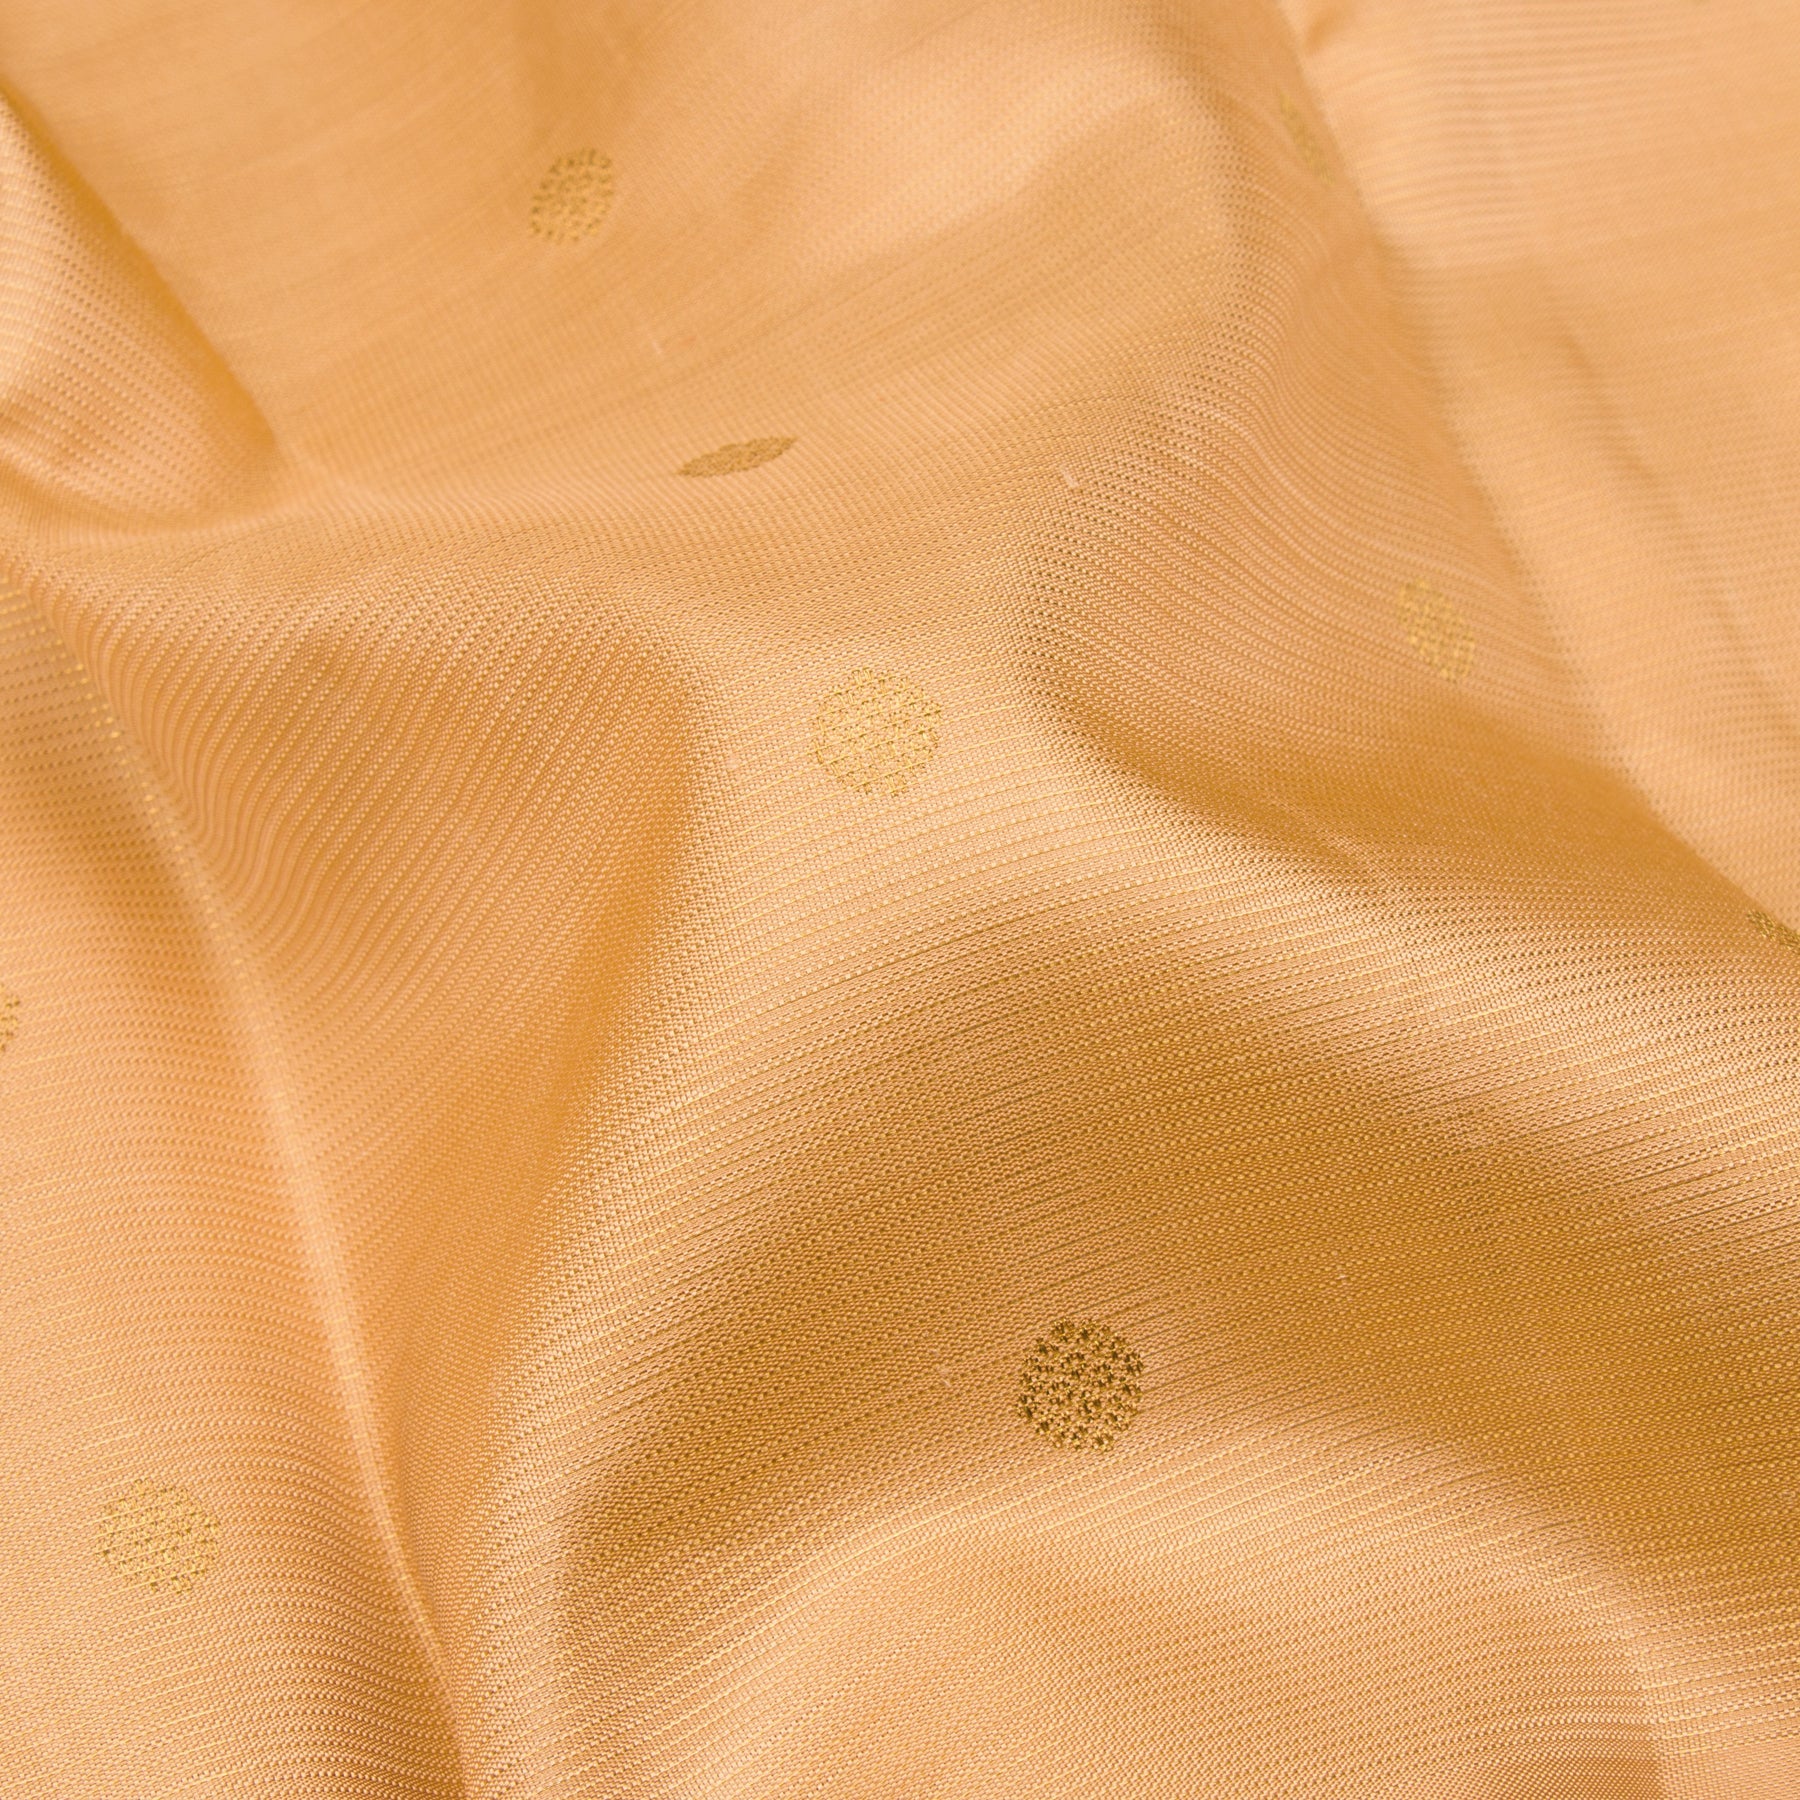 Kanakavalli Kanjivaram Silk Sari 23-110-HS001-06989 - Fabric View